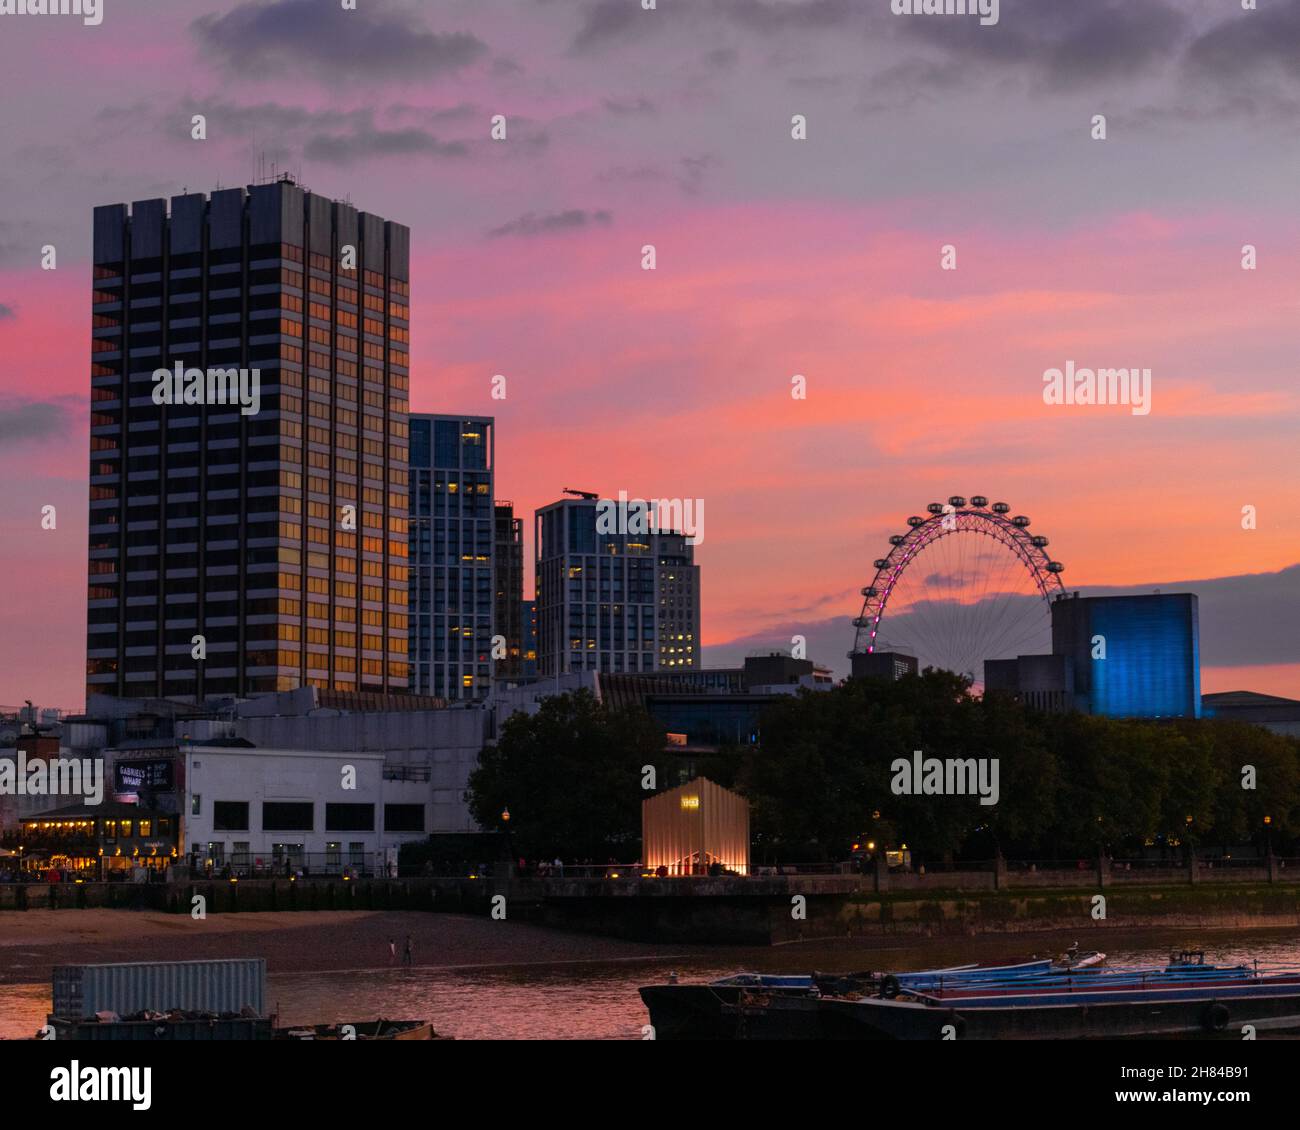 Un luminoso tramonto arancione e rosa sul tamigi girato dal lato nord, mostrando la riva sud, il teatro nazionale e l'occhio di Londra. Foto Stock